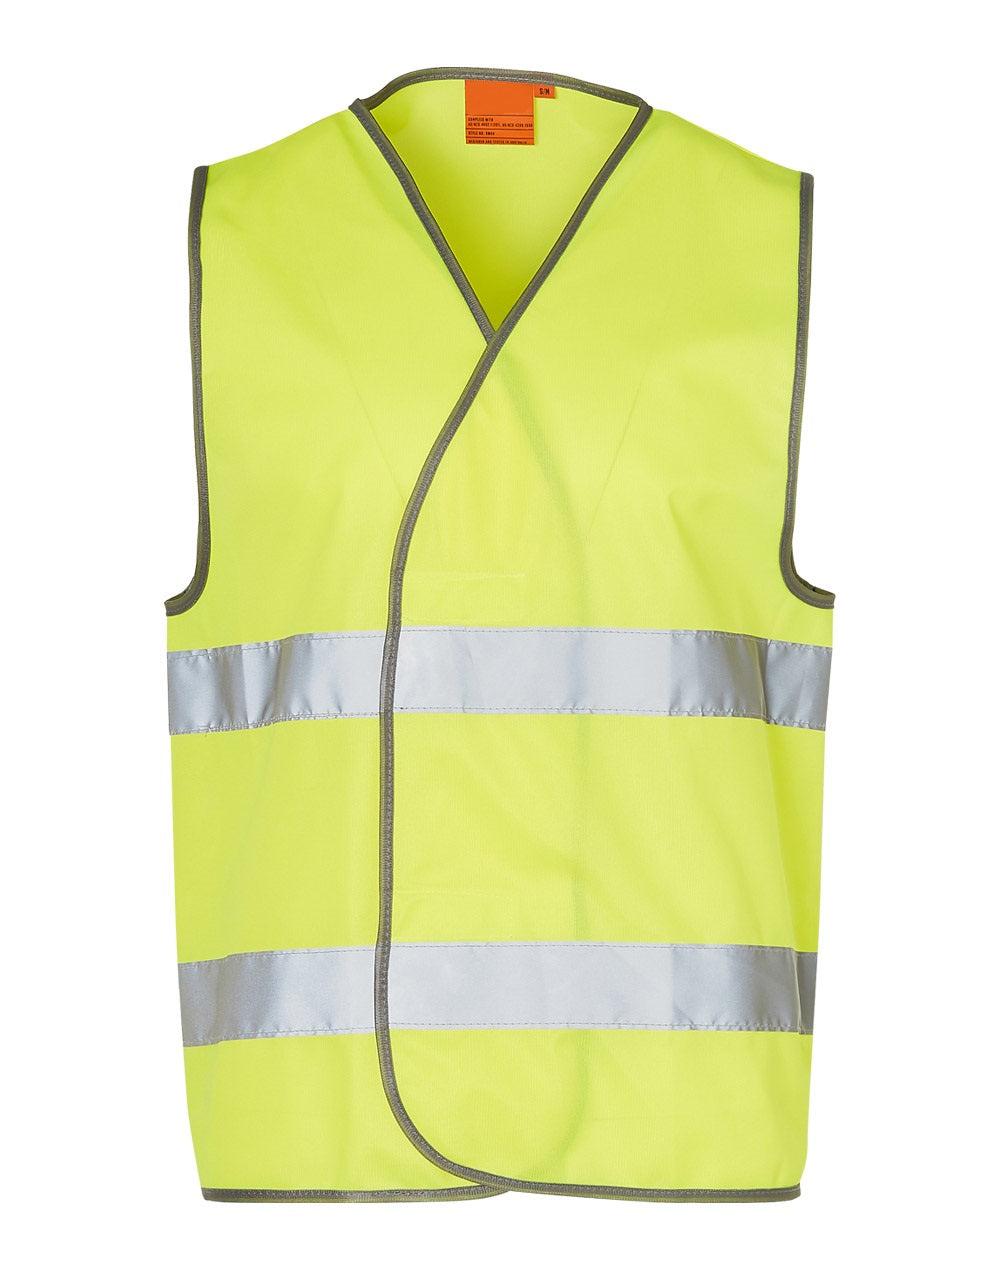 Adult's Safety Vest- Reflective Strips